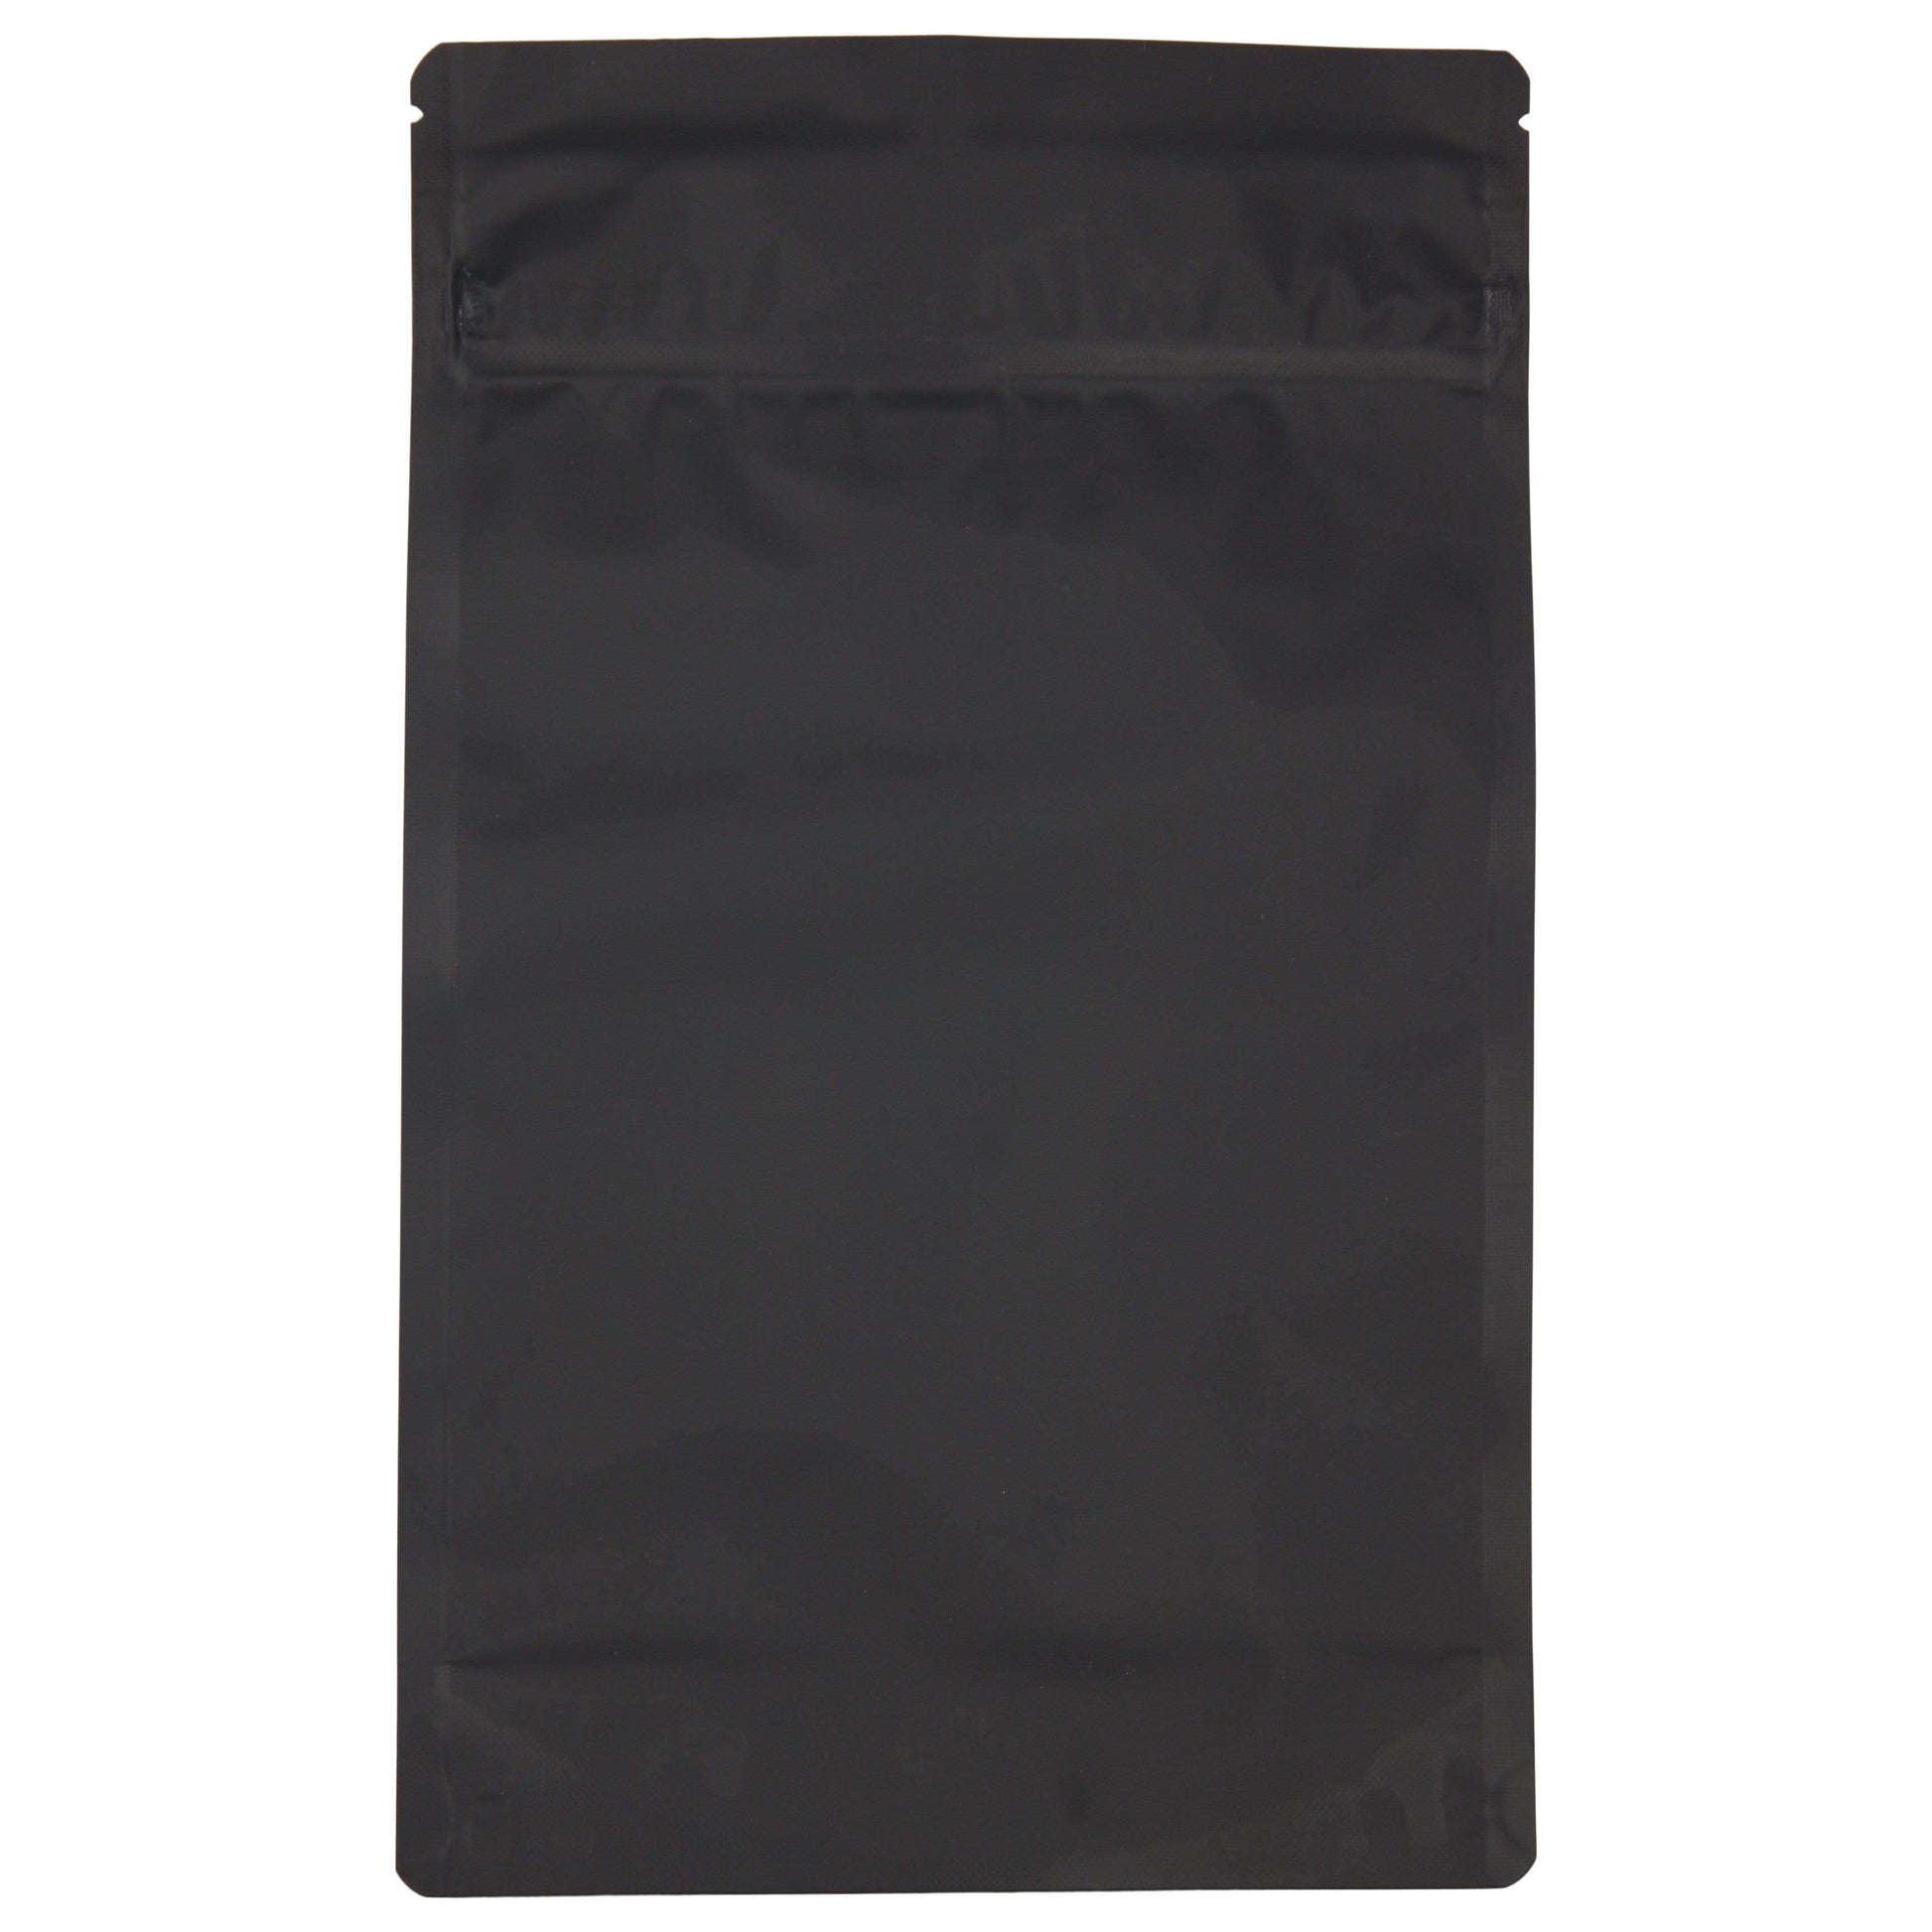 Bag King Child-Resistant Opaque Mylar Bag